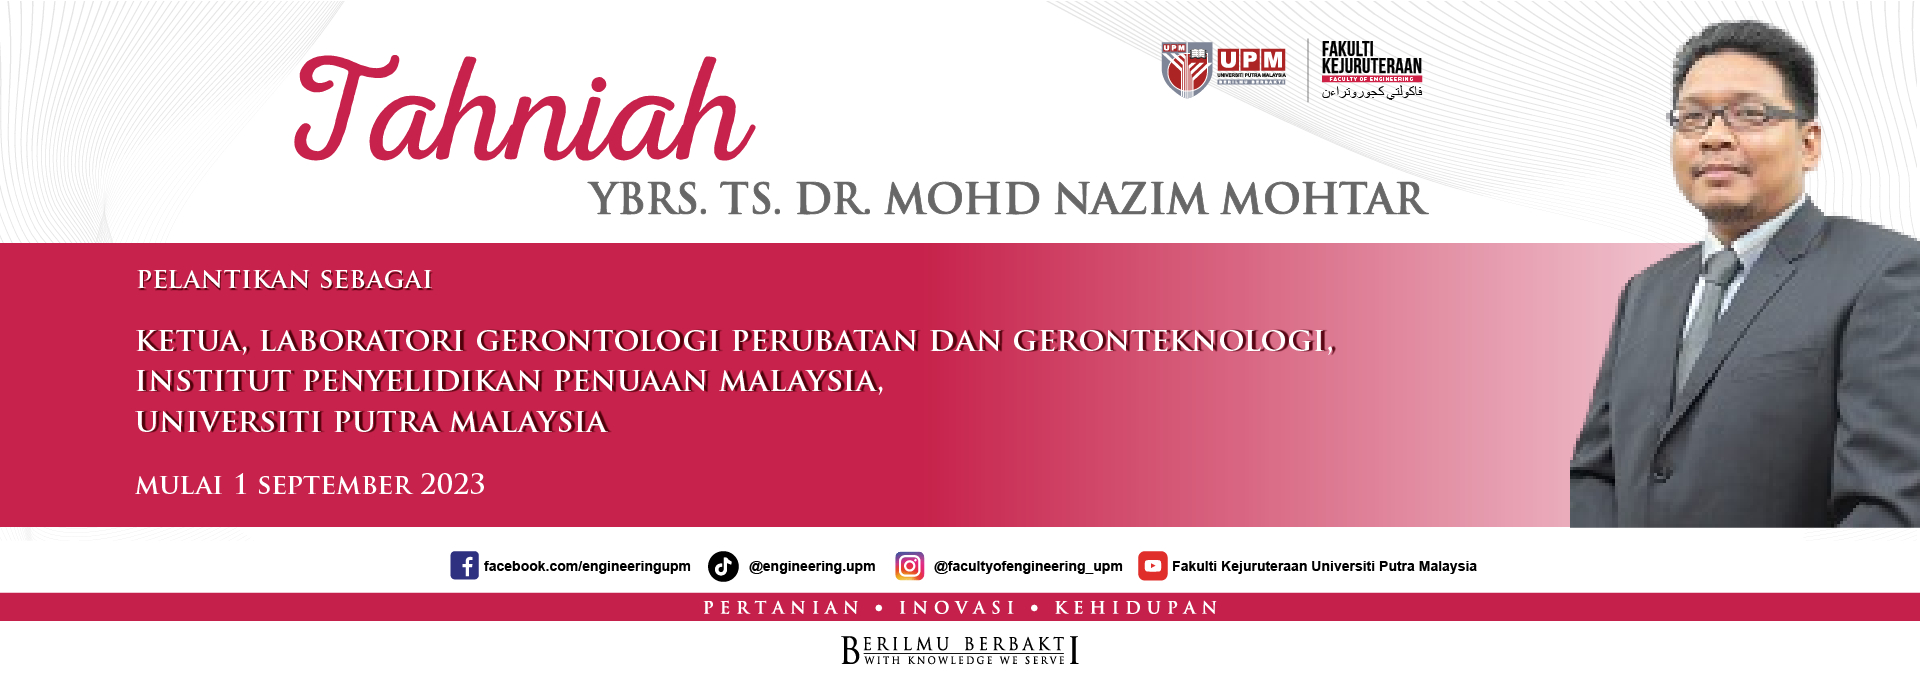 YBrs. Ts. Dr. Mohd Nizam Mohtar